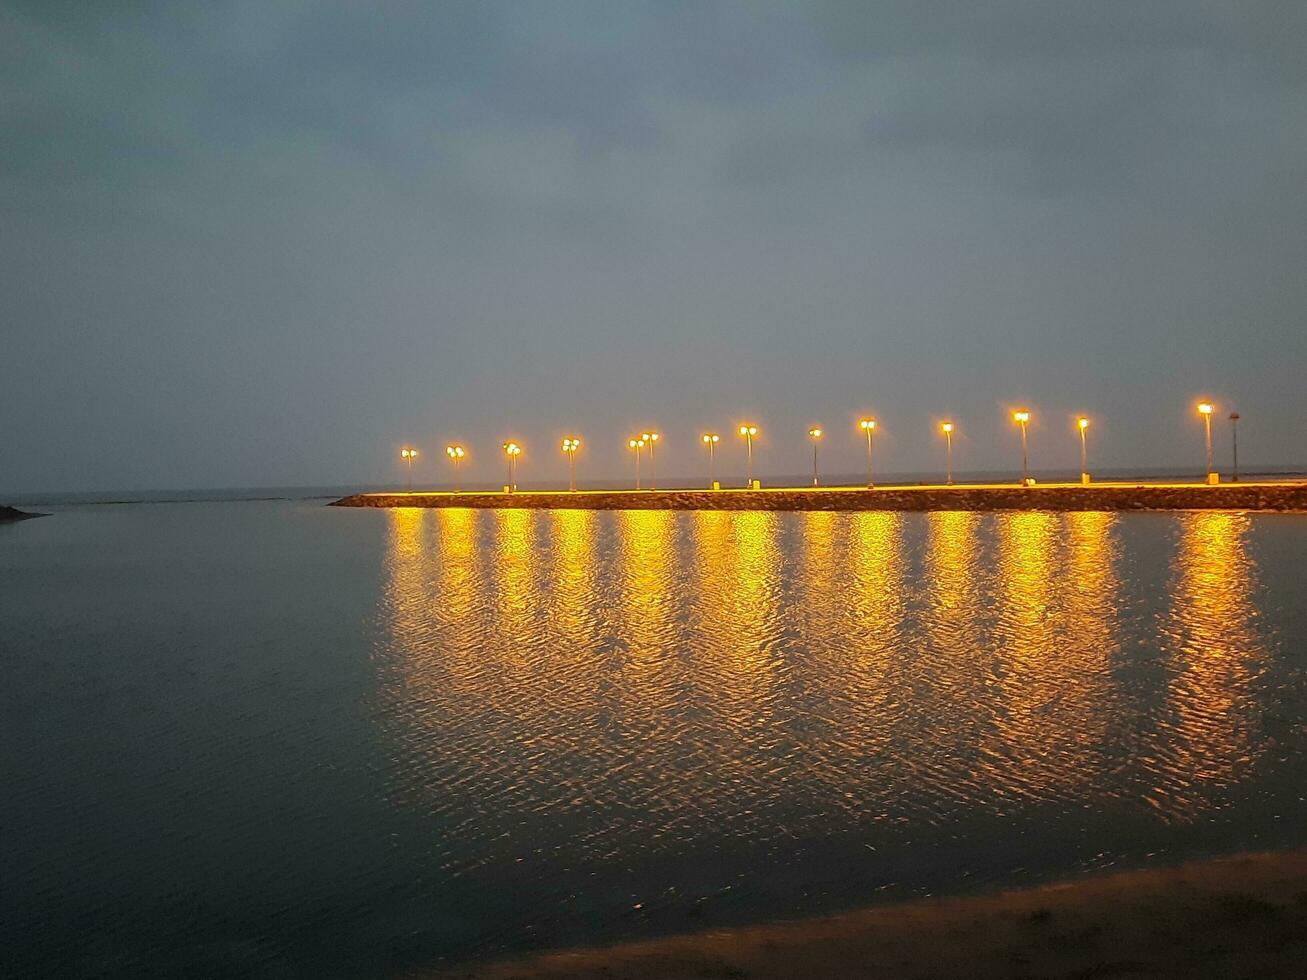 magnifique Matin vue de Al qunfudhah plage, saoudien Saoudite. le lumières sur le plage sont création une magnifique scène dans le Matin. photo